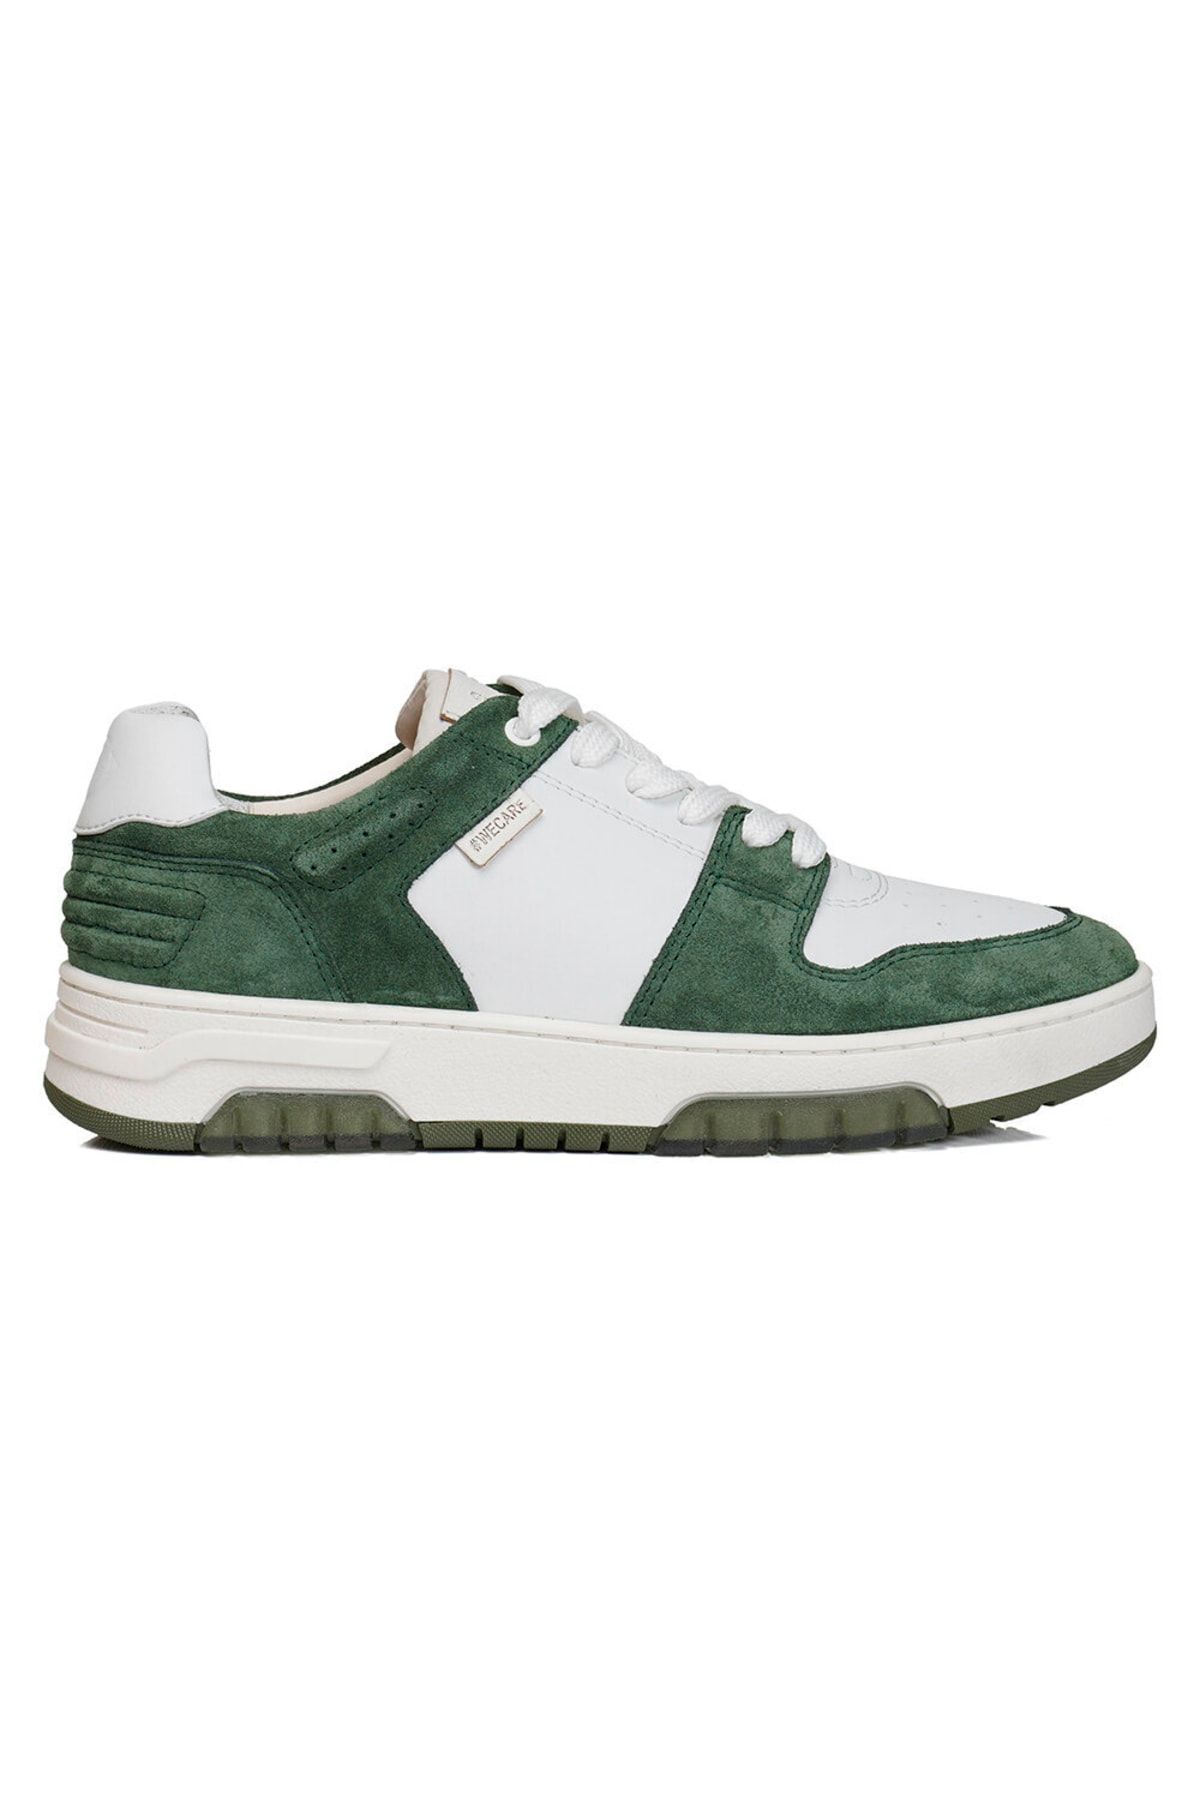 Greyder Lab Kadın Yeşil Hakiki Deri Sneaker Ayakkabı 3y2sa45090